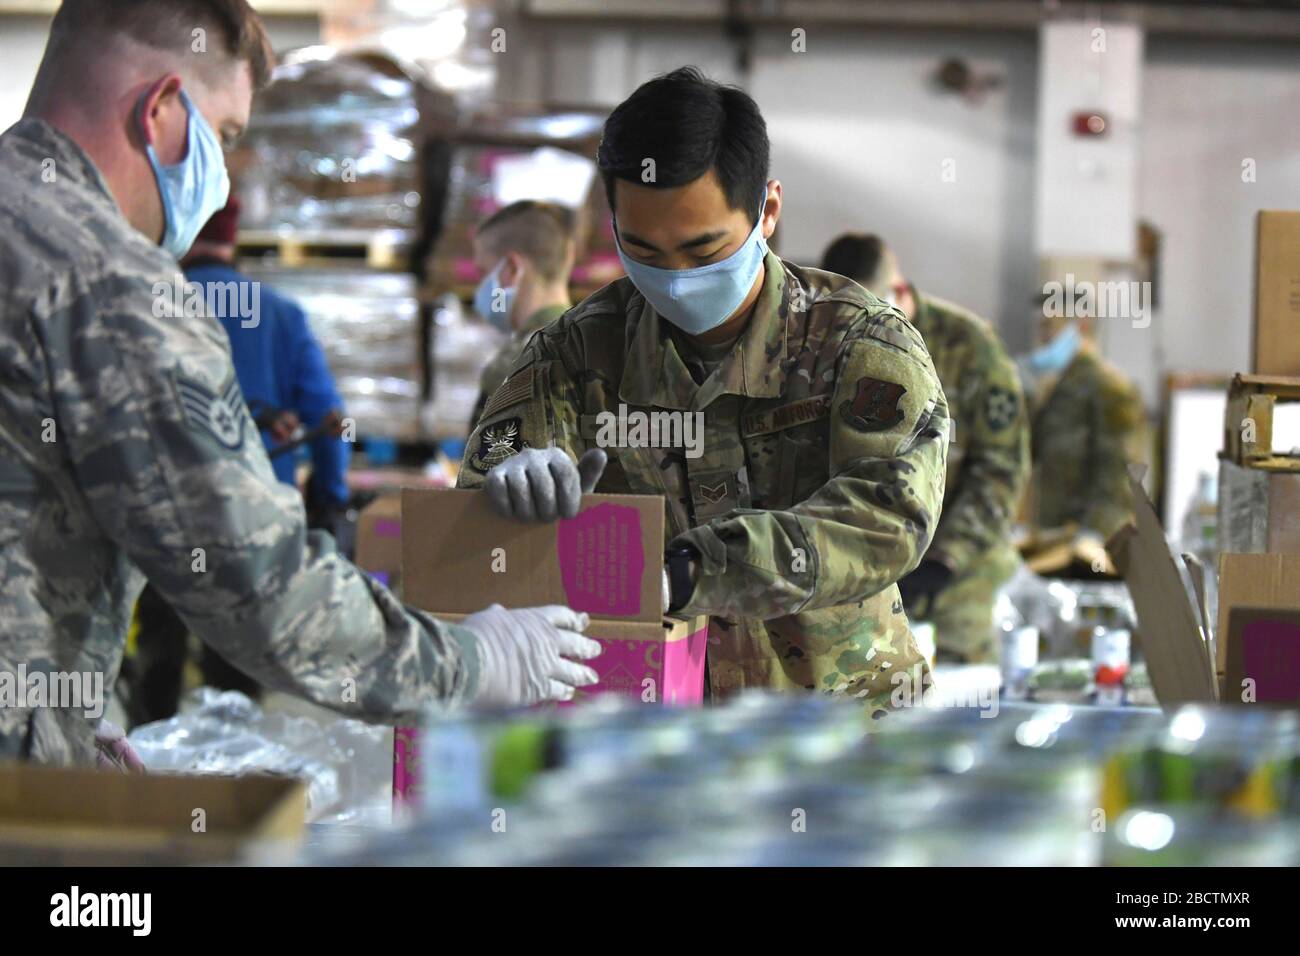 U.S. Air Force Senior Airman Young Hills, emballe une boîte avec de la nourriture en conserve à la Food Bank pour aider avec COVID-19, soulagement du coronavirus 3 avril 2020 à Lakewood, Washington. Banque D'Images